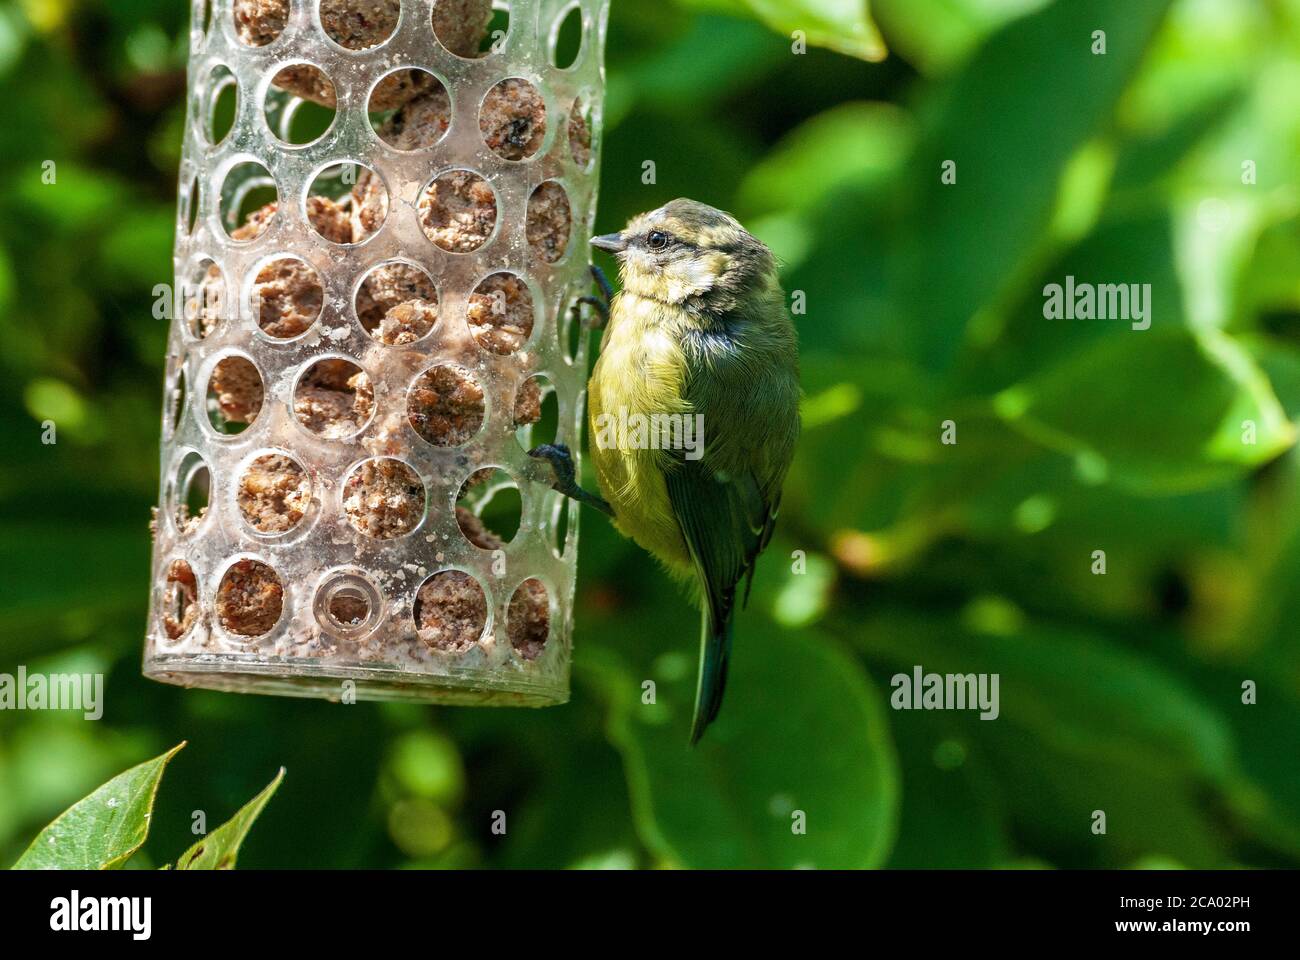 Chiffchaff on bird feeder. Stock Photo